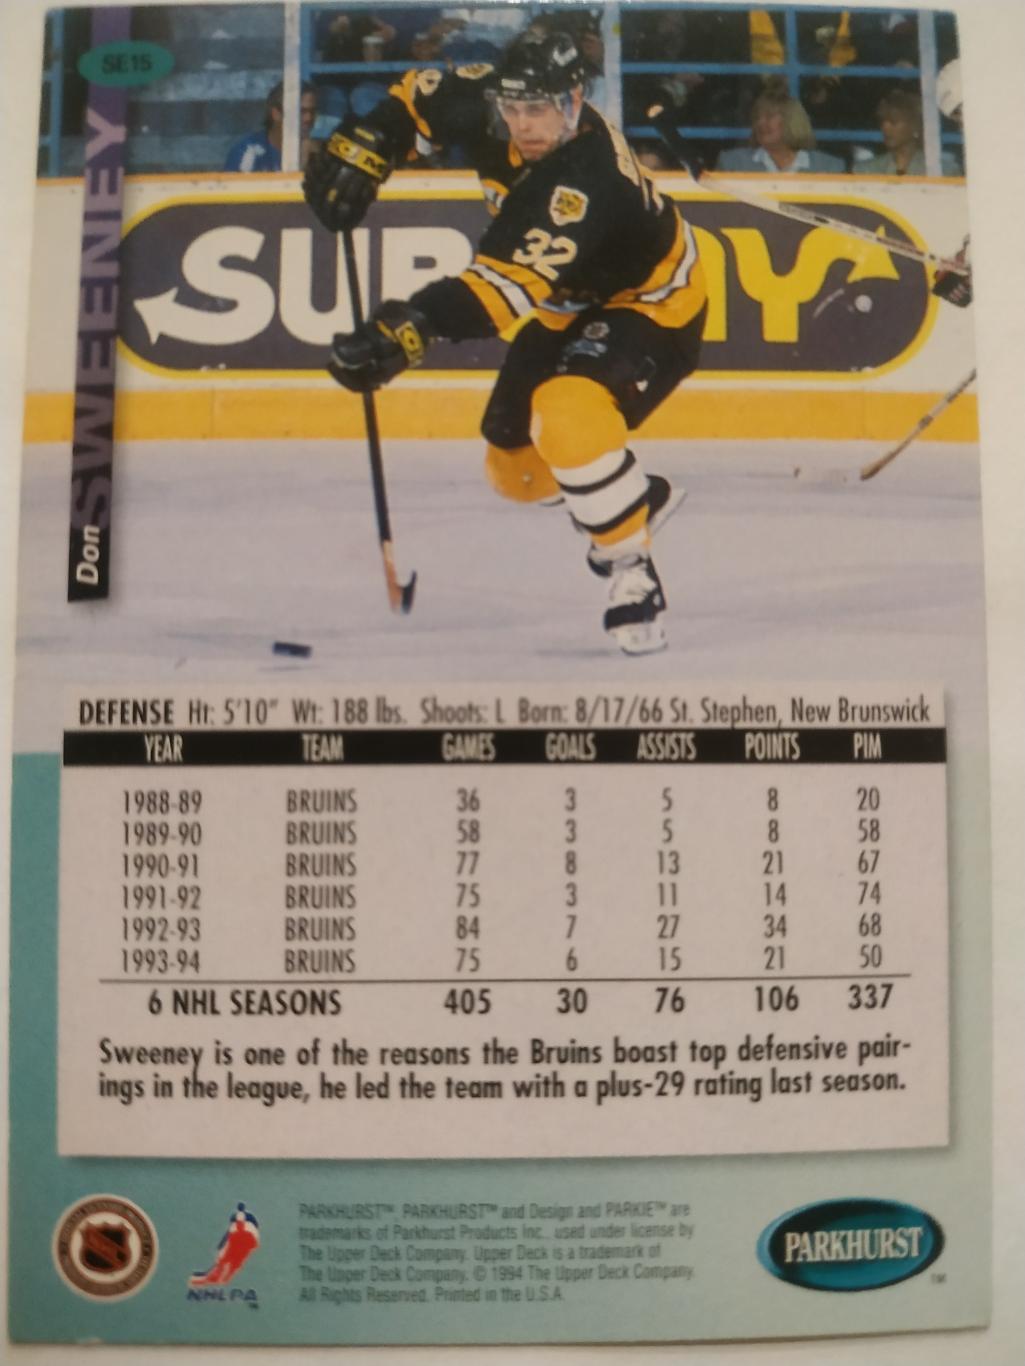 ХОККЕЙ КАРТОЧКА НХЛ PARKHURST 1994-95 NHL DON SWEENEY BOSTON BRUINS #SE15 1